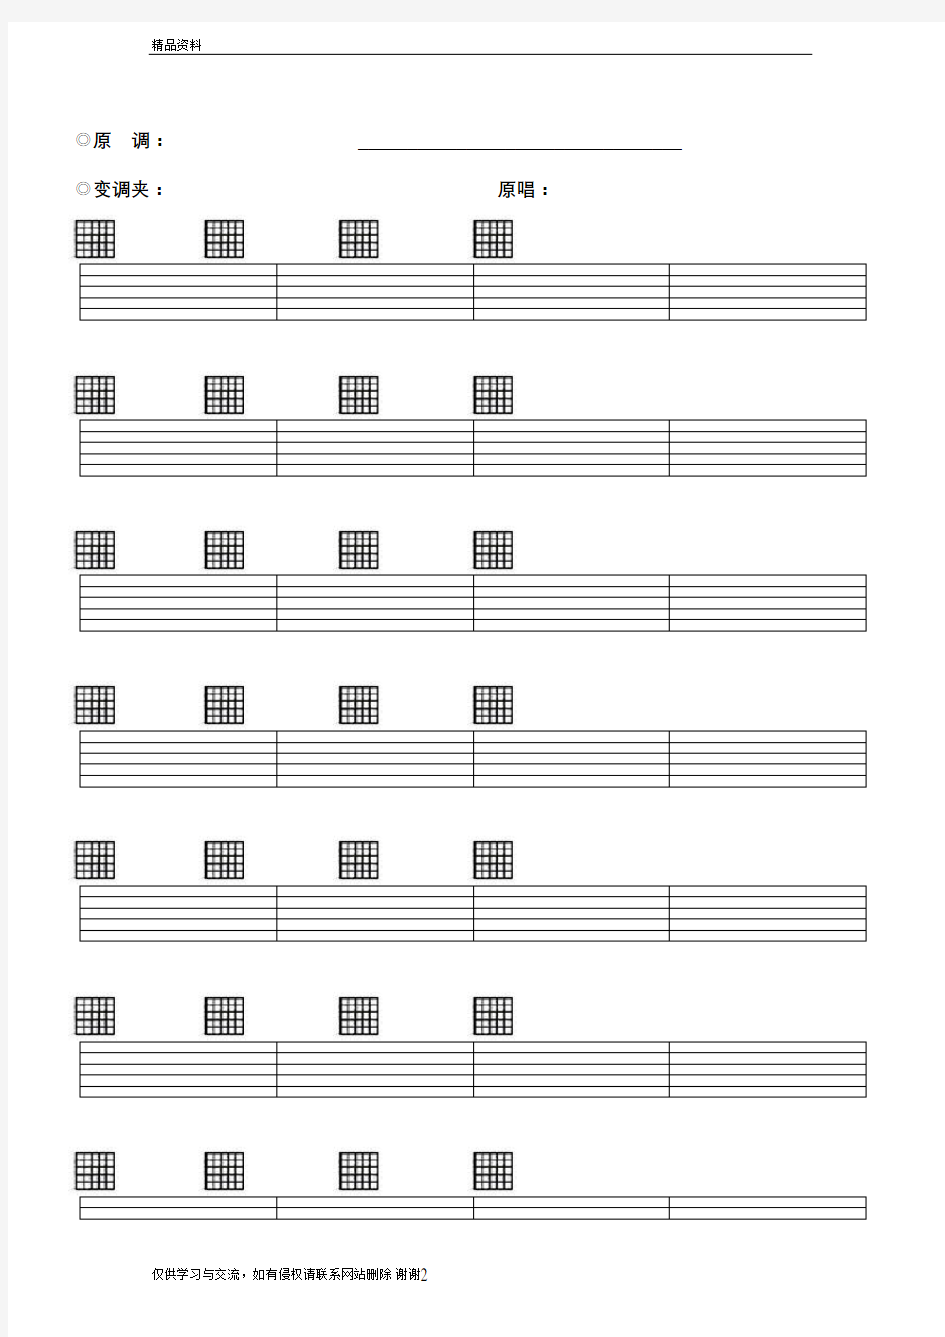 空白六线谱,带和弦,吉他谱纸,Word版本,格式正确,下载打印即可(完美清晰打印版)教学内容